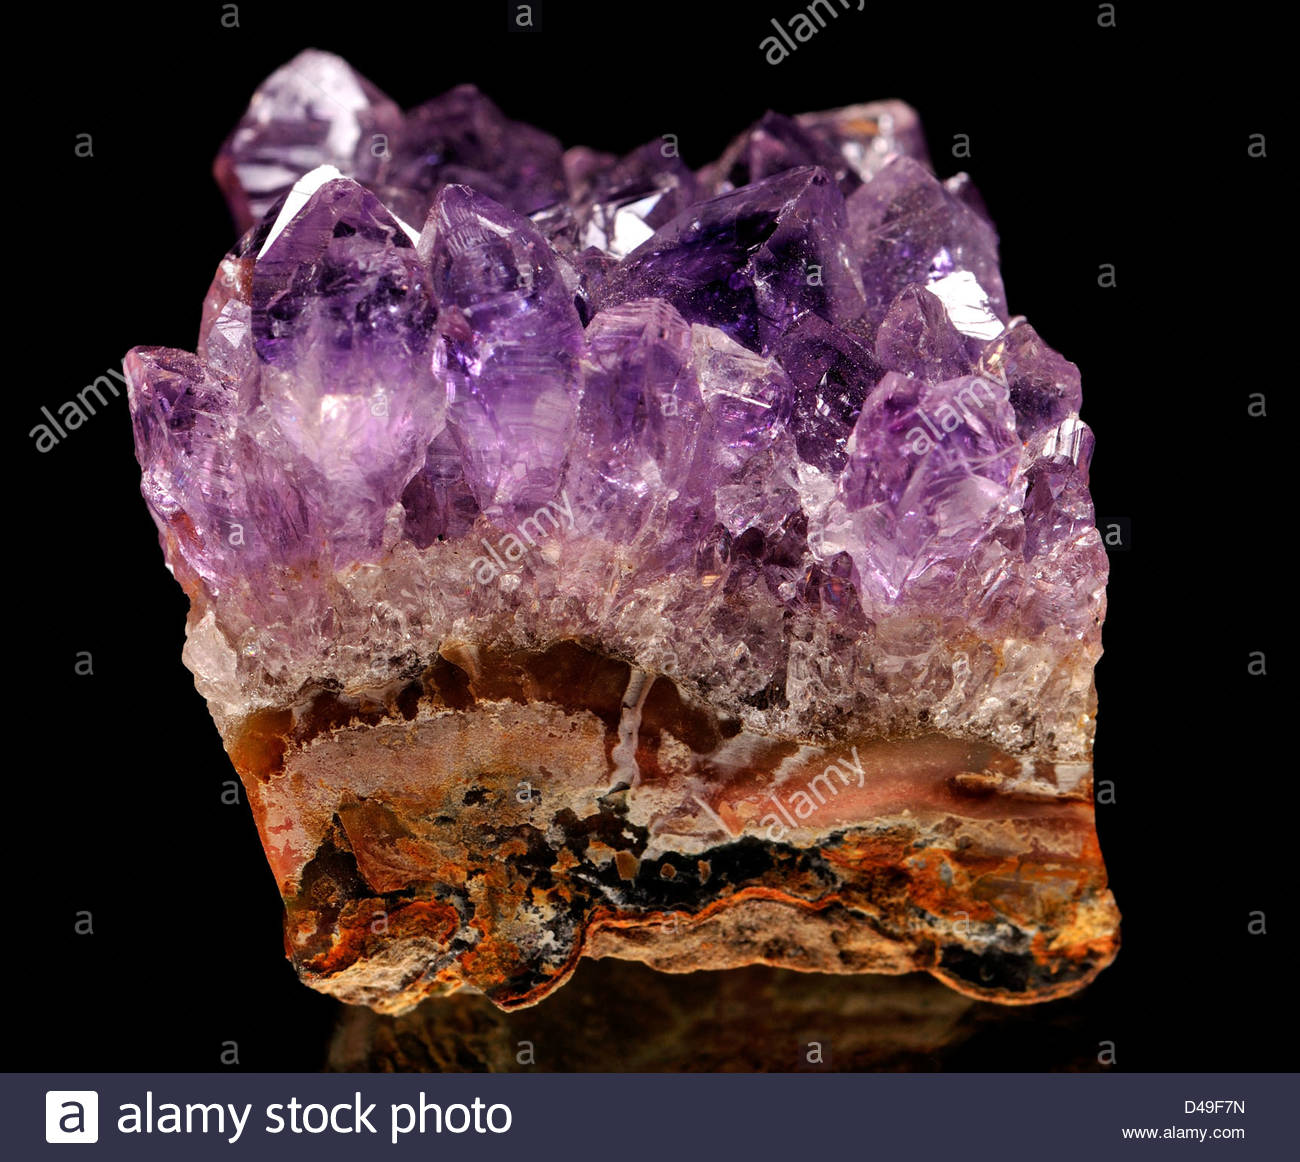 purple quartz